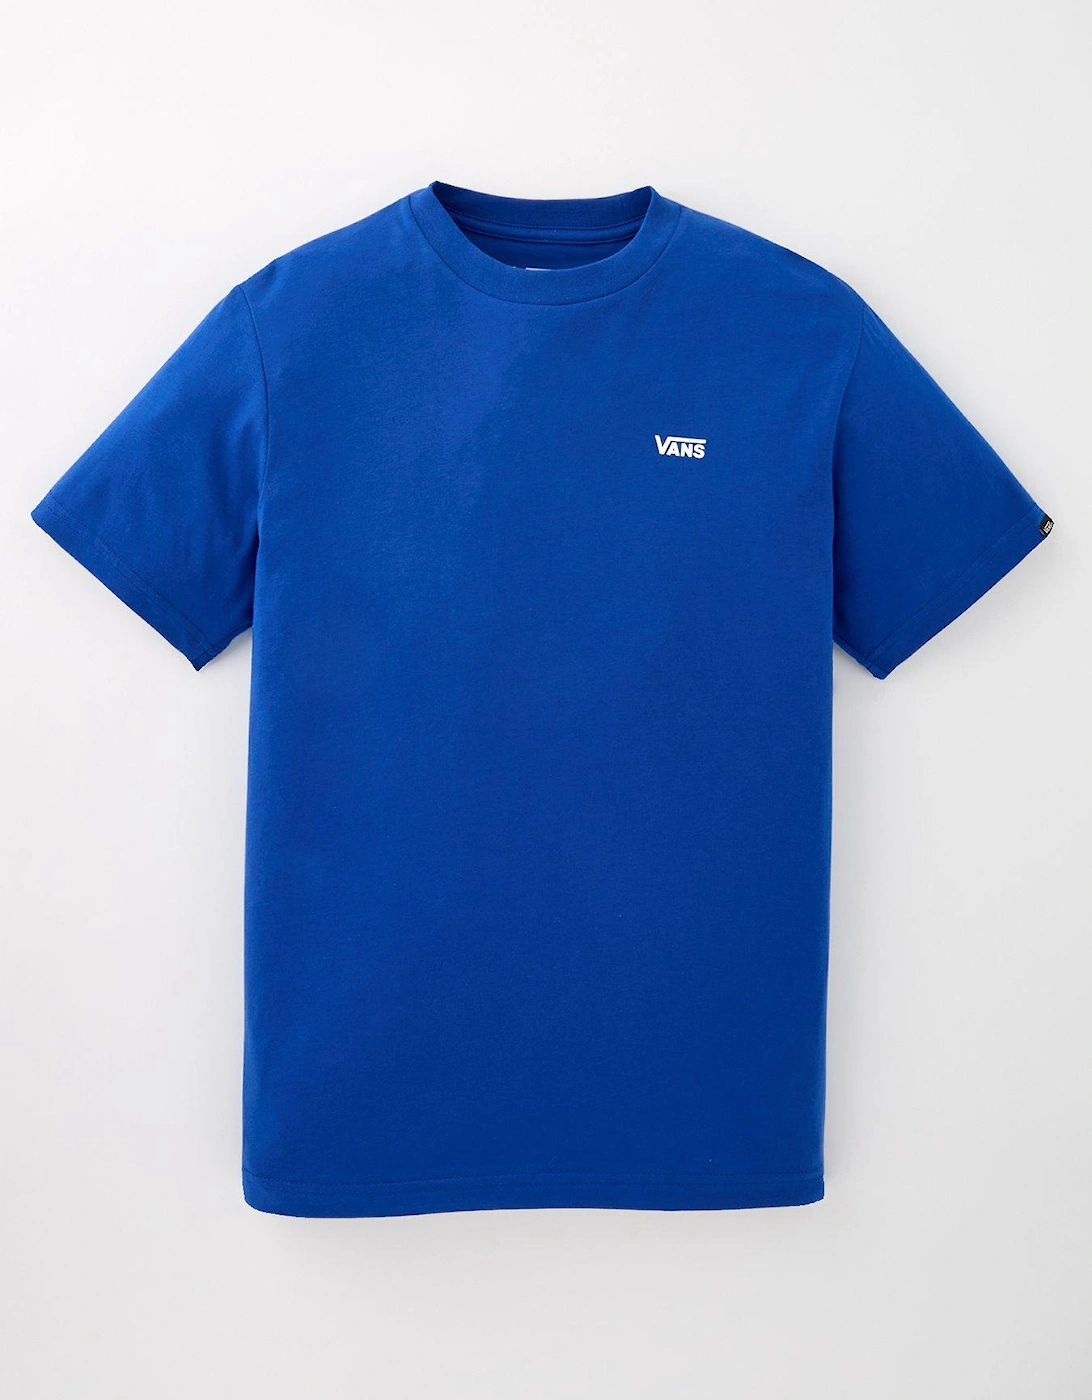 Boys Left Chest Logo T-shirt - Blue, 2 of 1